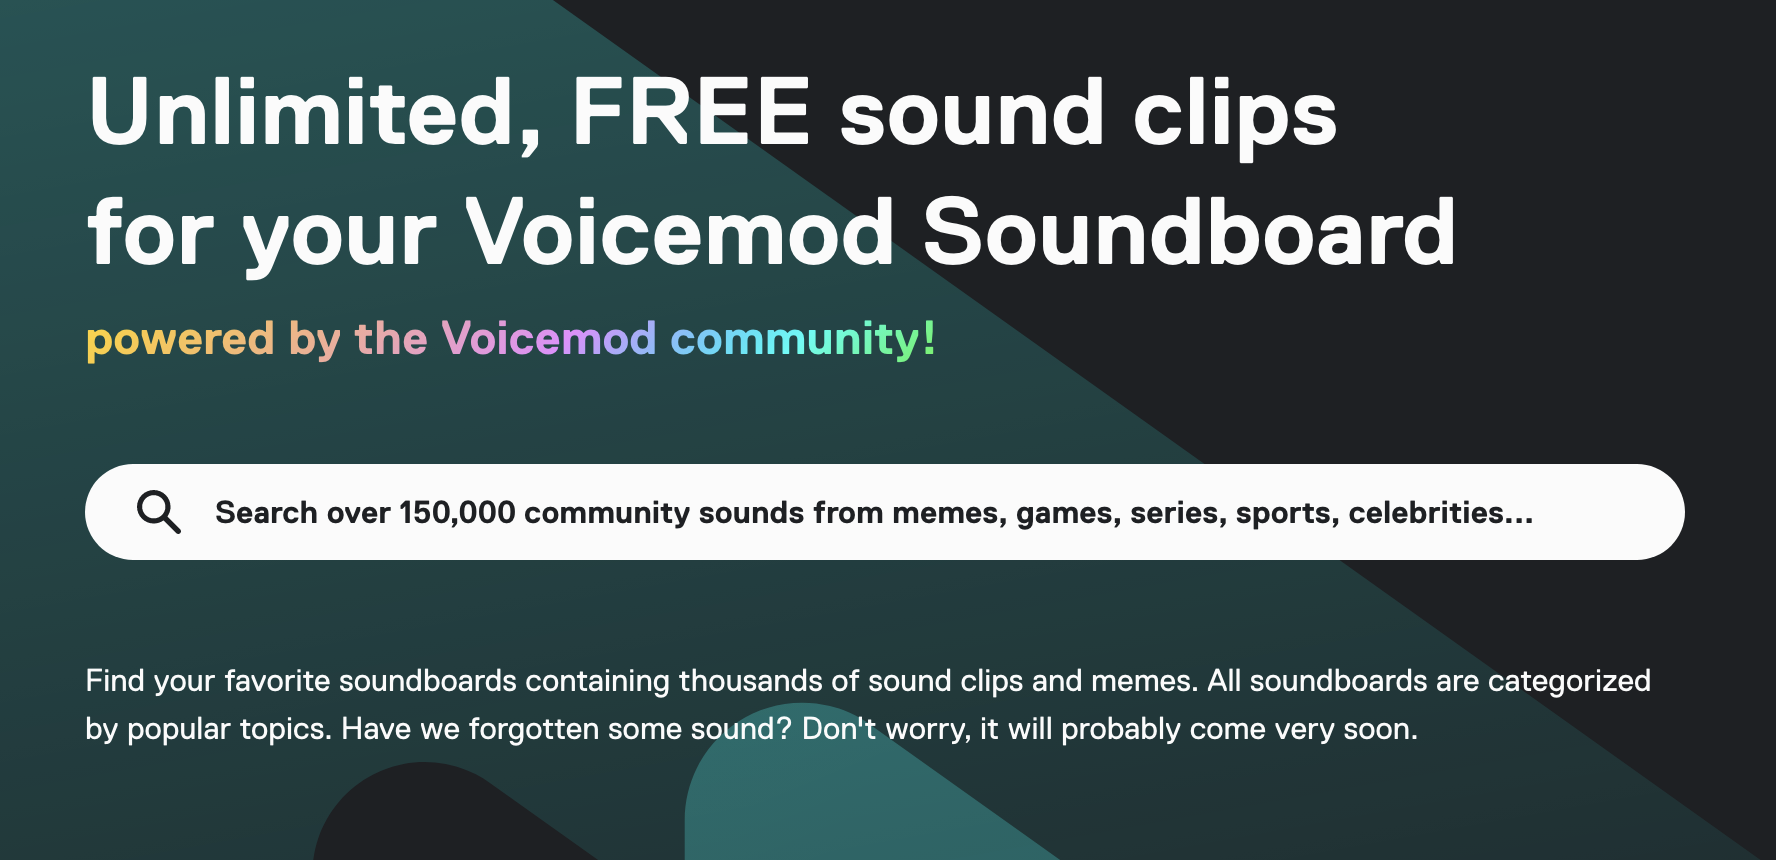 Voicemod：提供无限免费的声音剪辑